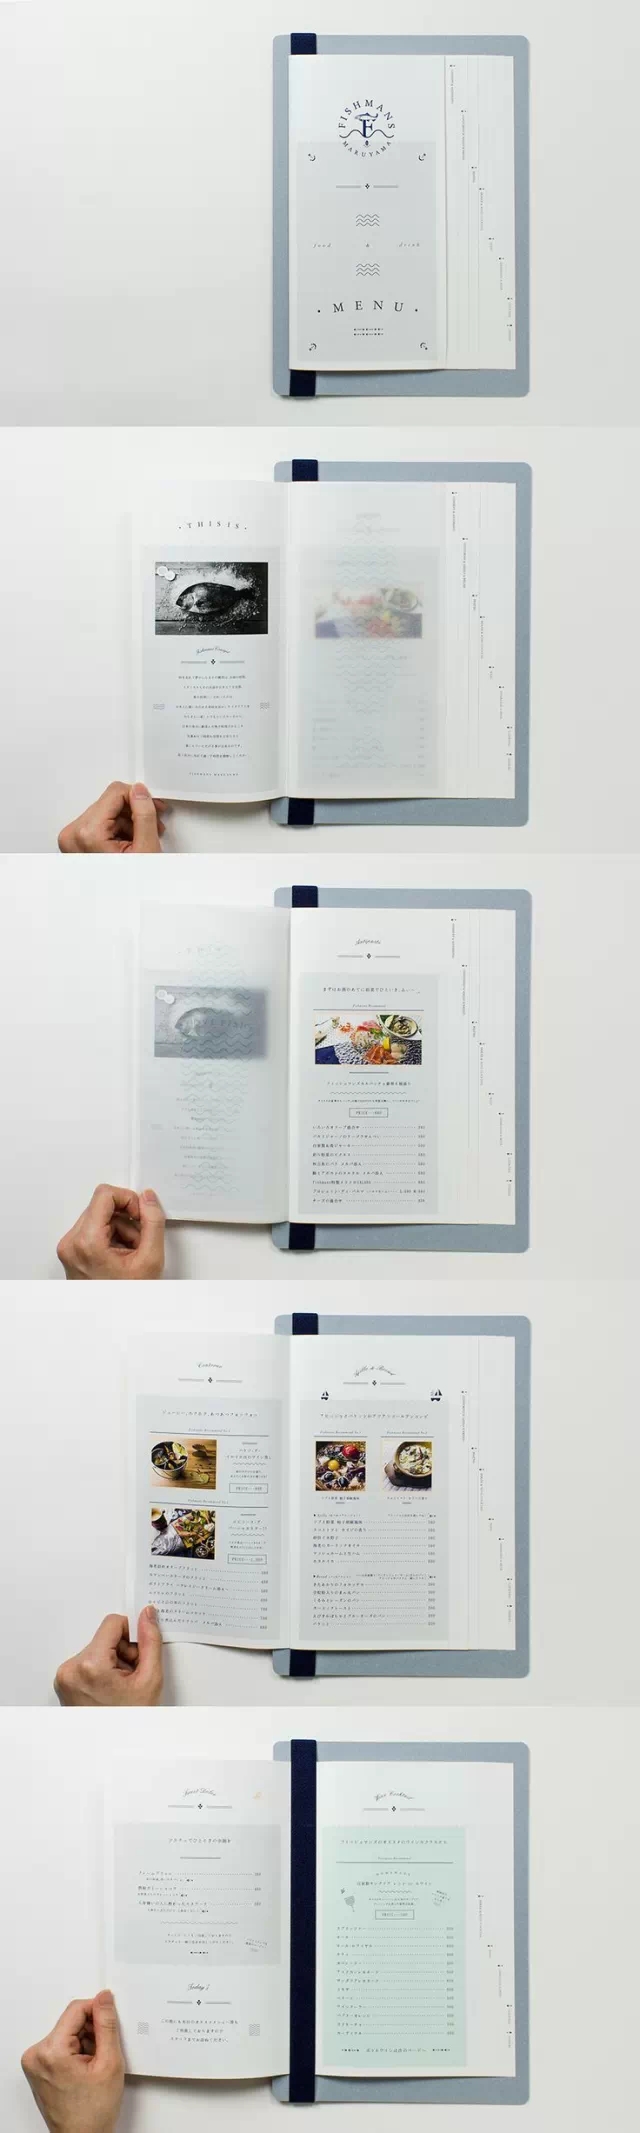 精美的书籍装帧设计合集